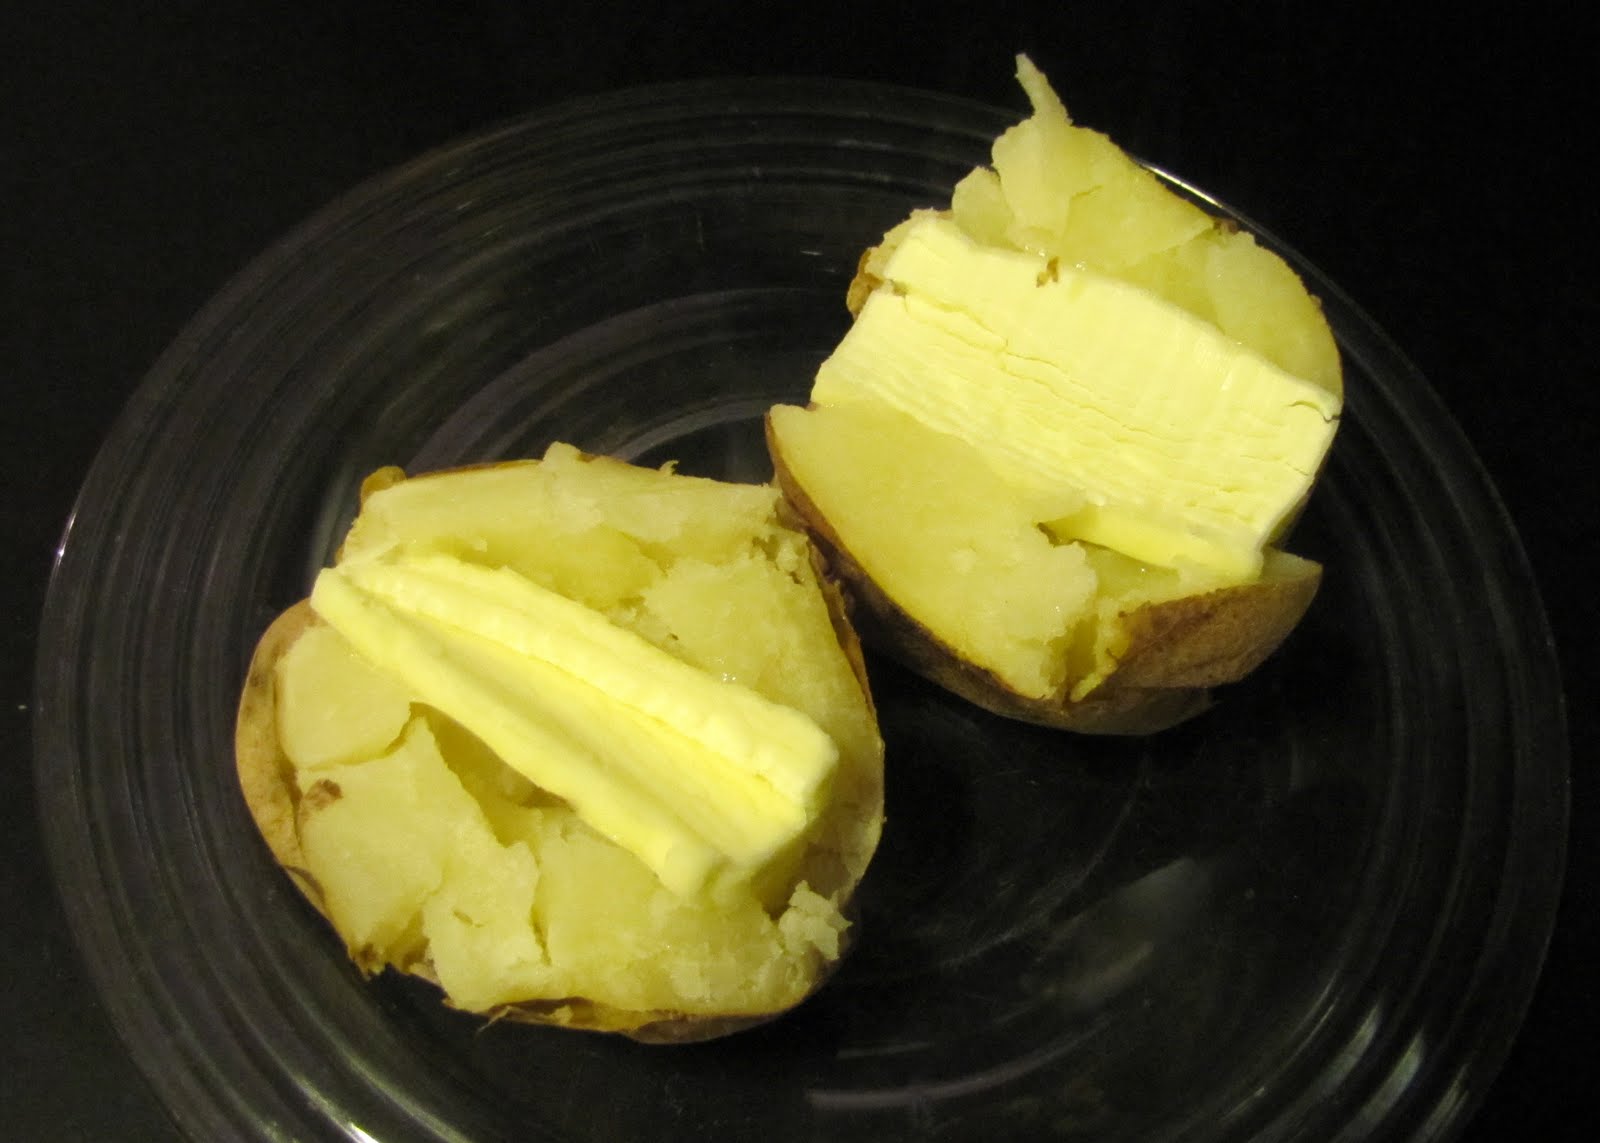 Buttered Bake potato